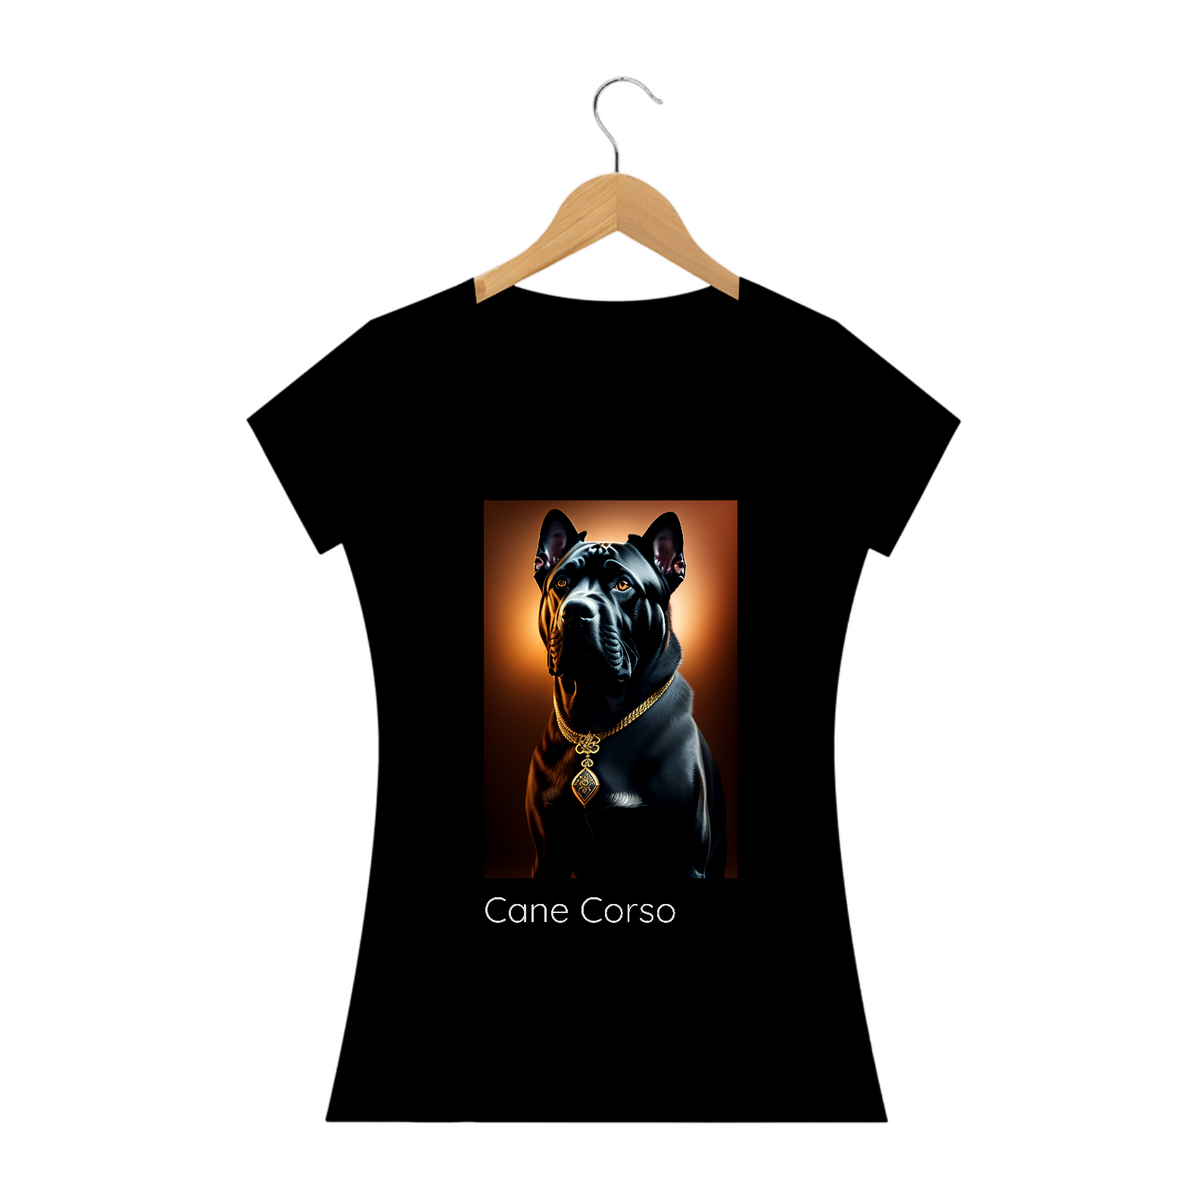 Nome do produto: Cane Corso / T-shirt Woman Cane Corso